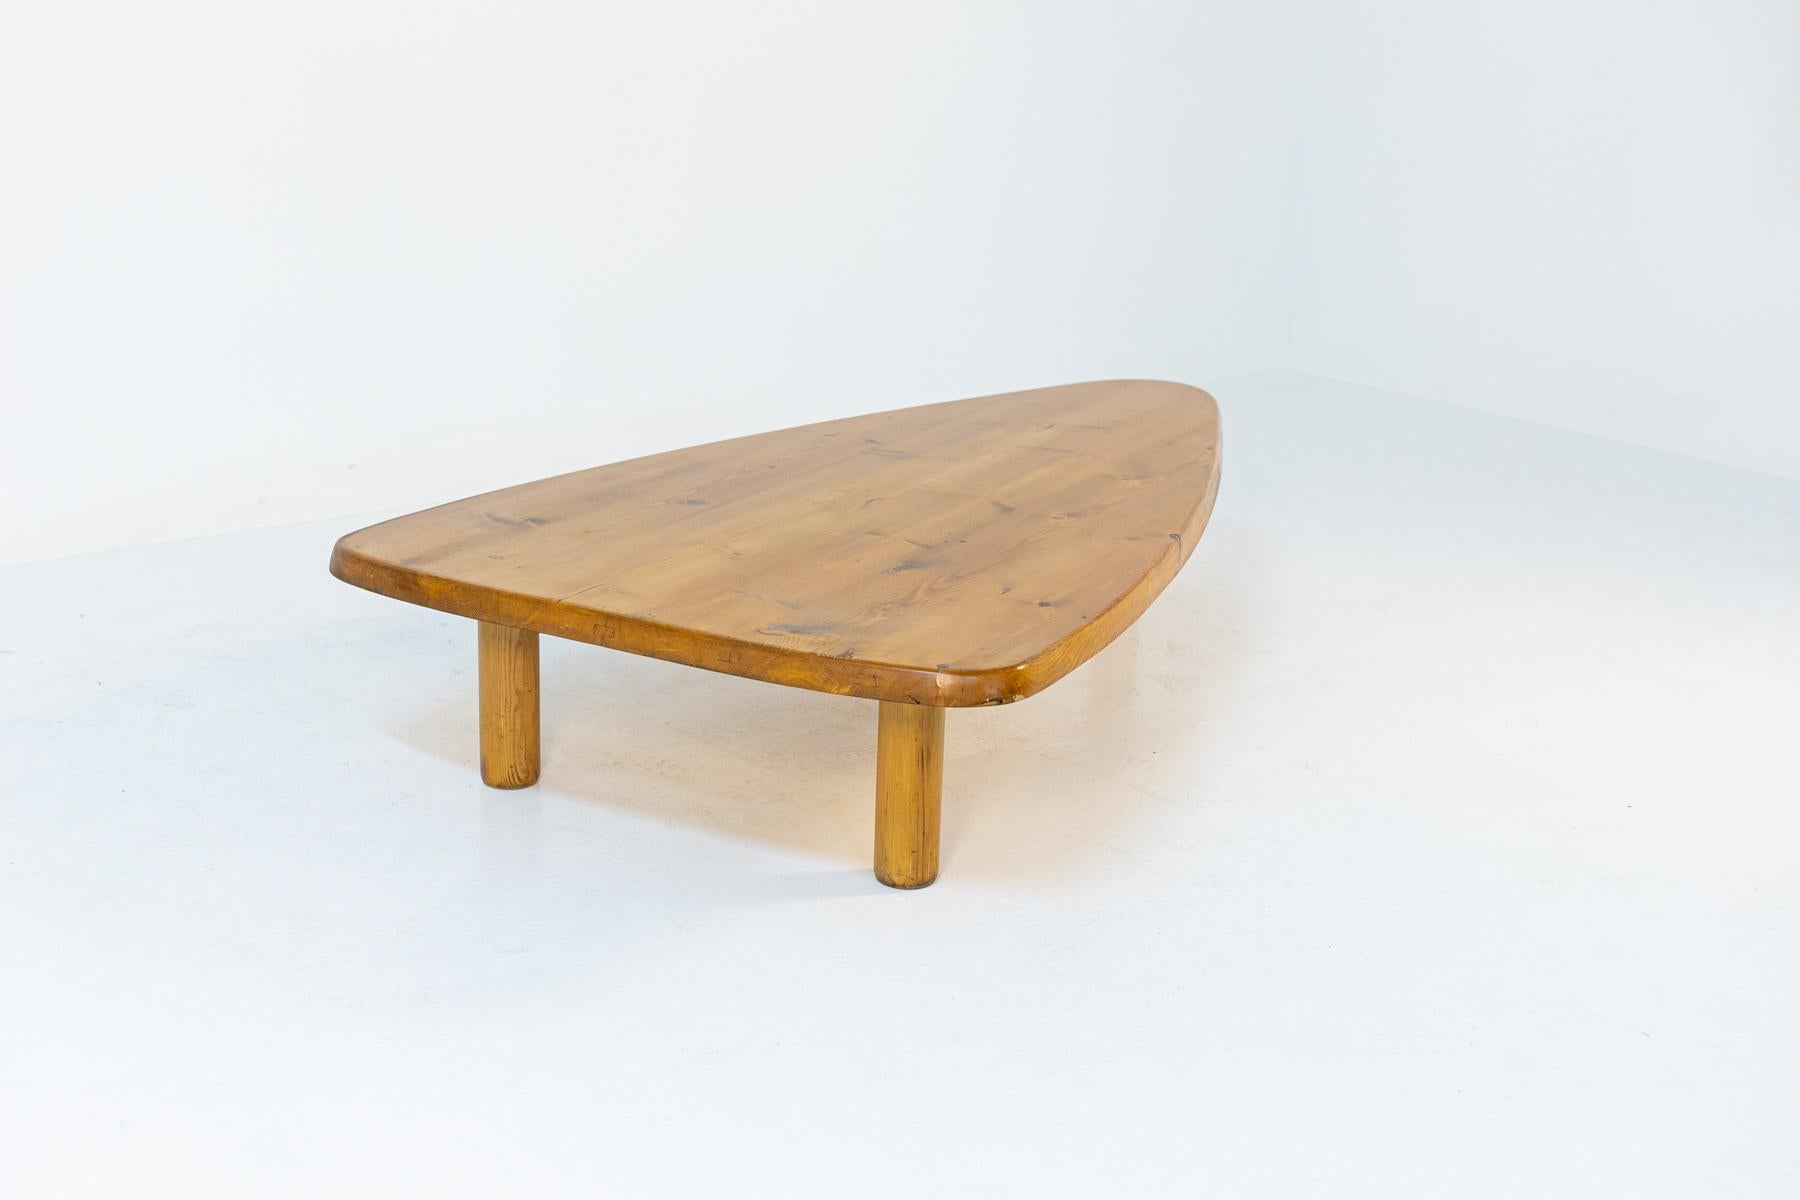 Merveilleuse grande table basse en bois de belle fabrication française des années 1950.
La table basse a une belle forme triangulaire allongée. Réalisé entièrement en bois de pin traité de couleur claire, il apporte une touche de chaleur à la pièce